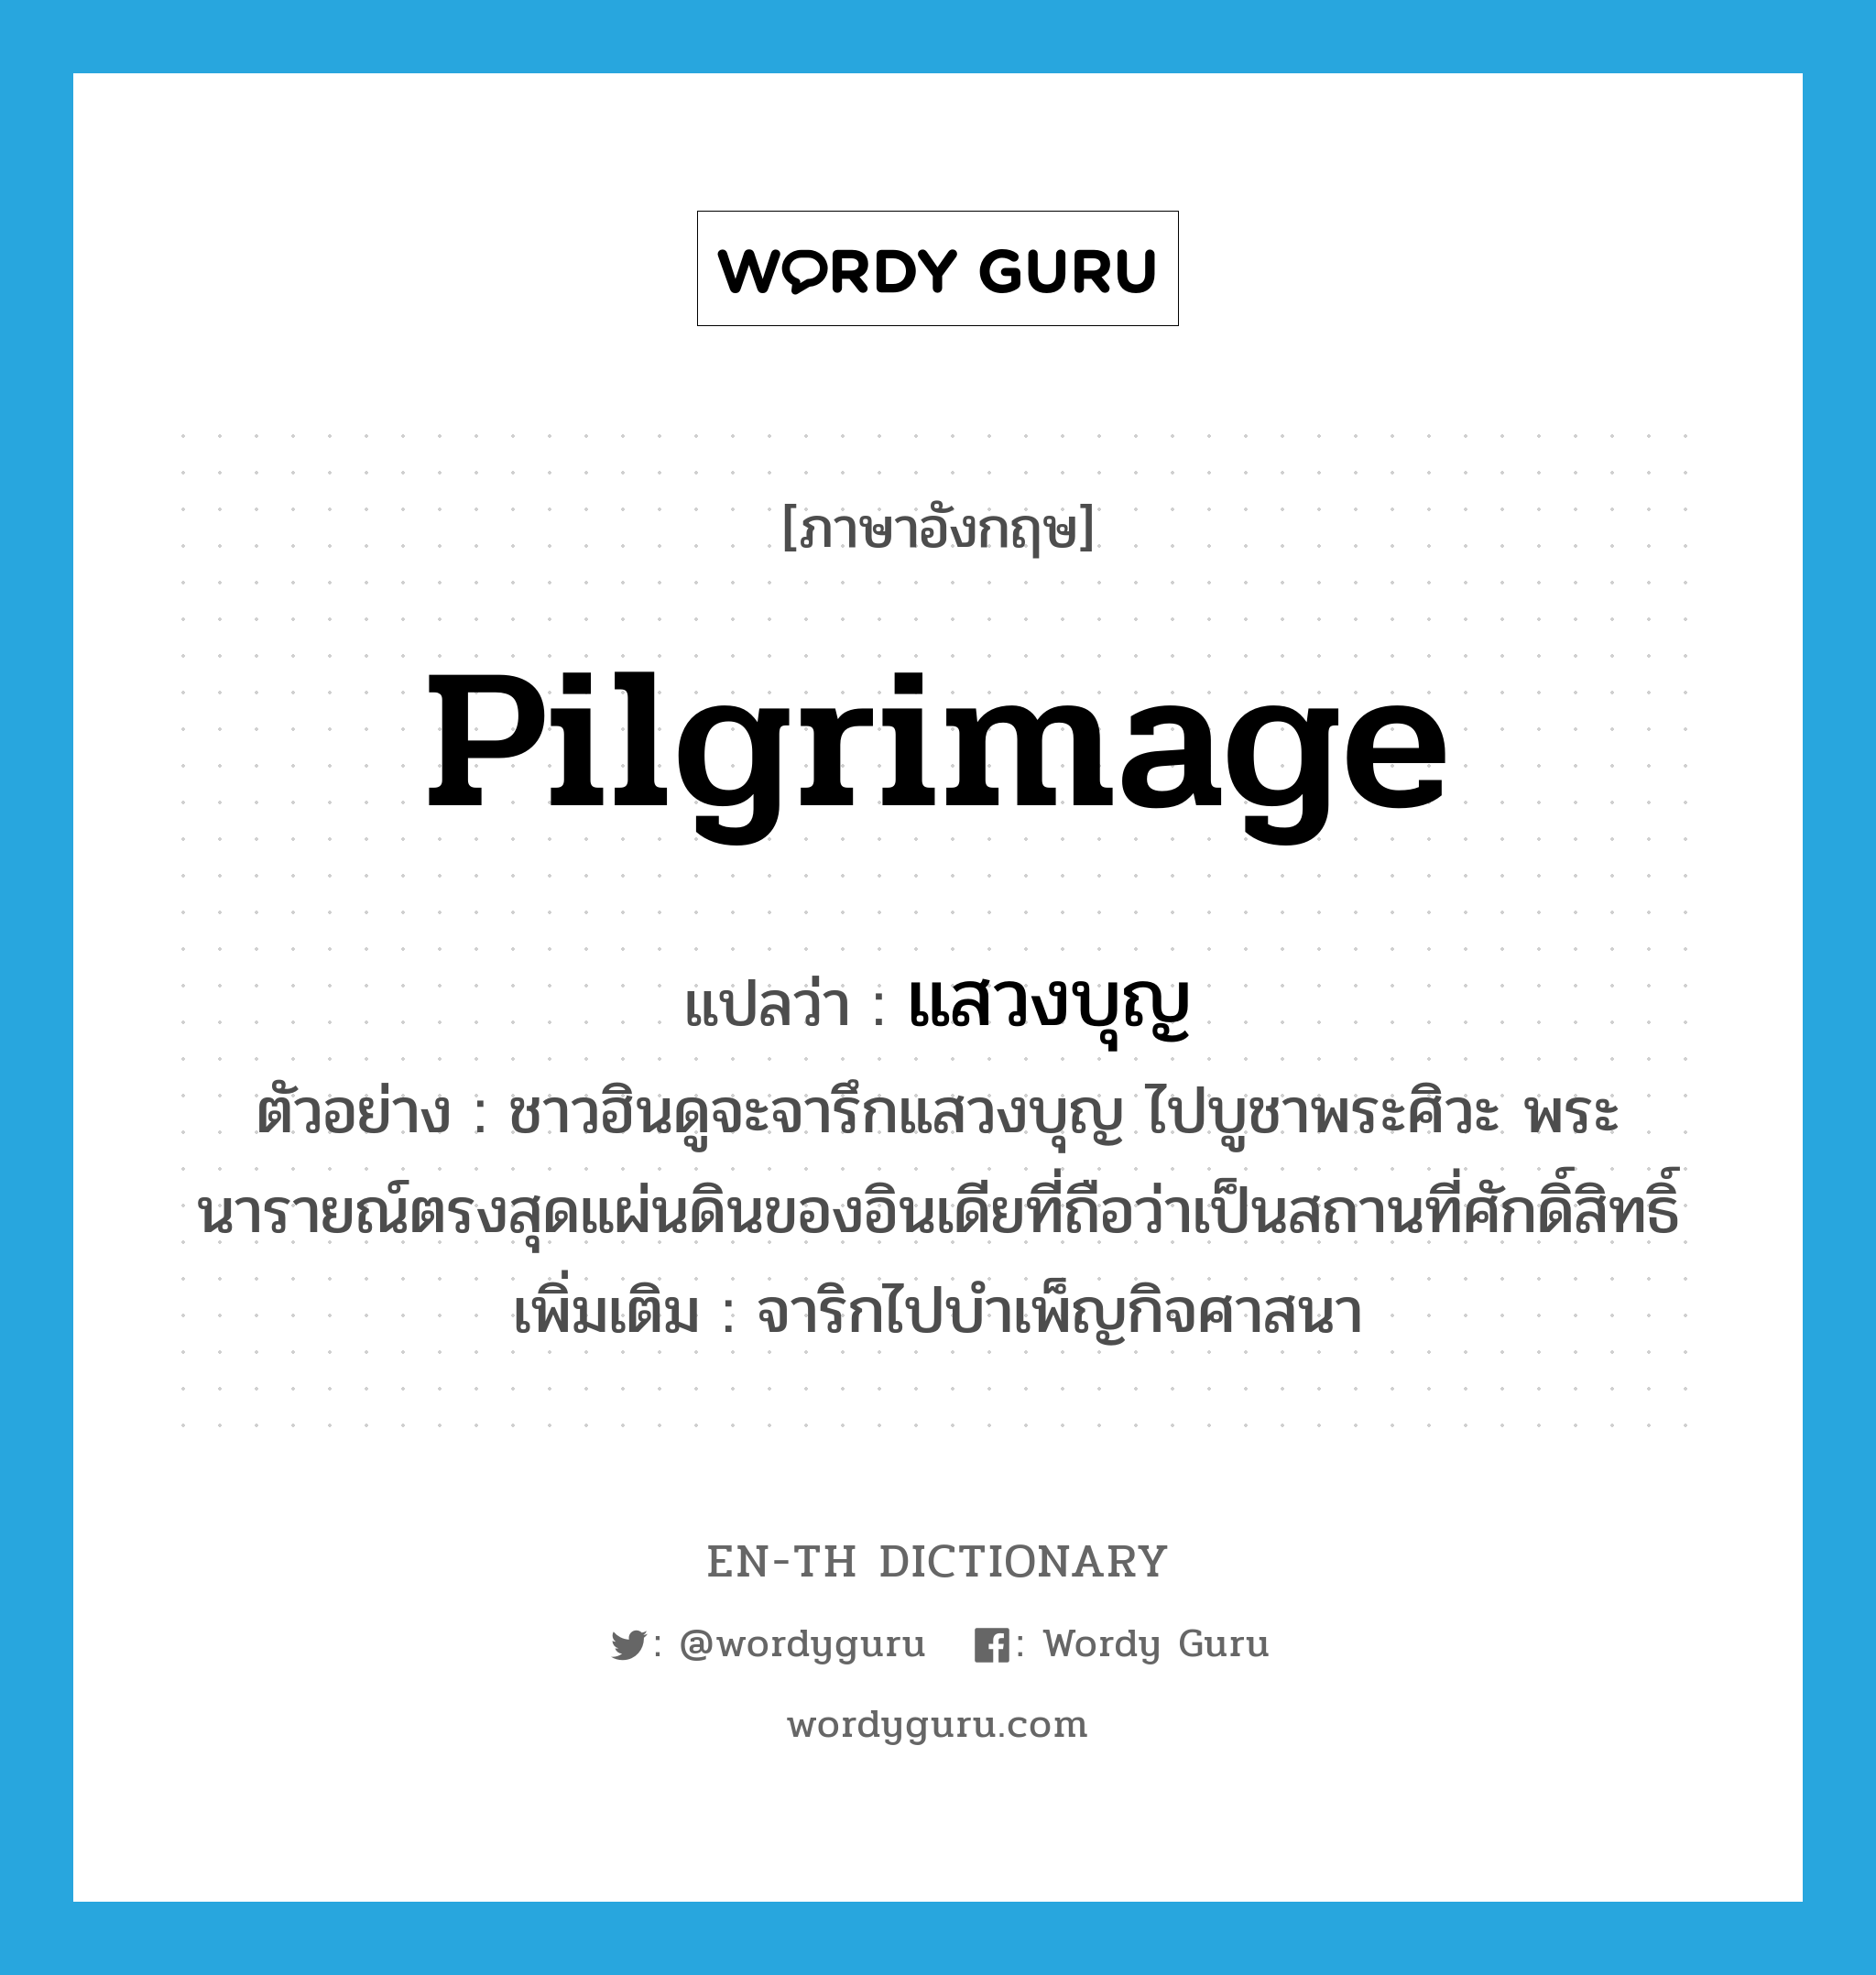 pilgrimage แปลว่า?, คำศัพท์ภาษาอังกฤษ pilgrimage แปลว่า แสวงบุญ ประเภท V ตัวอย่าง ชาวฮินดูจะจารึกแสวงบุญ ไปบูชาพระศิวะ พระนารายณ์ตรงสุดแผ่นดินของอินเดียที่ถือว่าเป็นสถานที่ศักดิ์สิทธิ์ เพิ่มเติม จาริกไปบำเพ็ญกิจศาสนา หมวด V